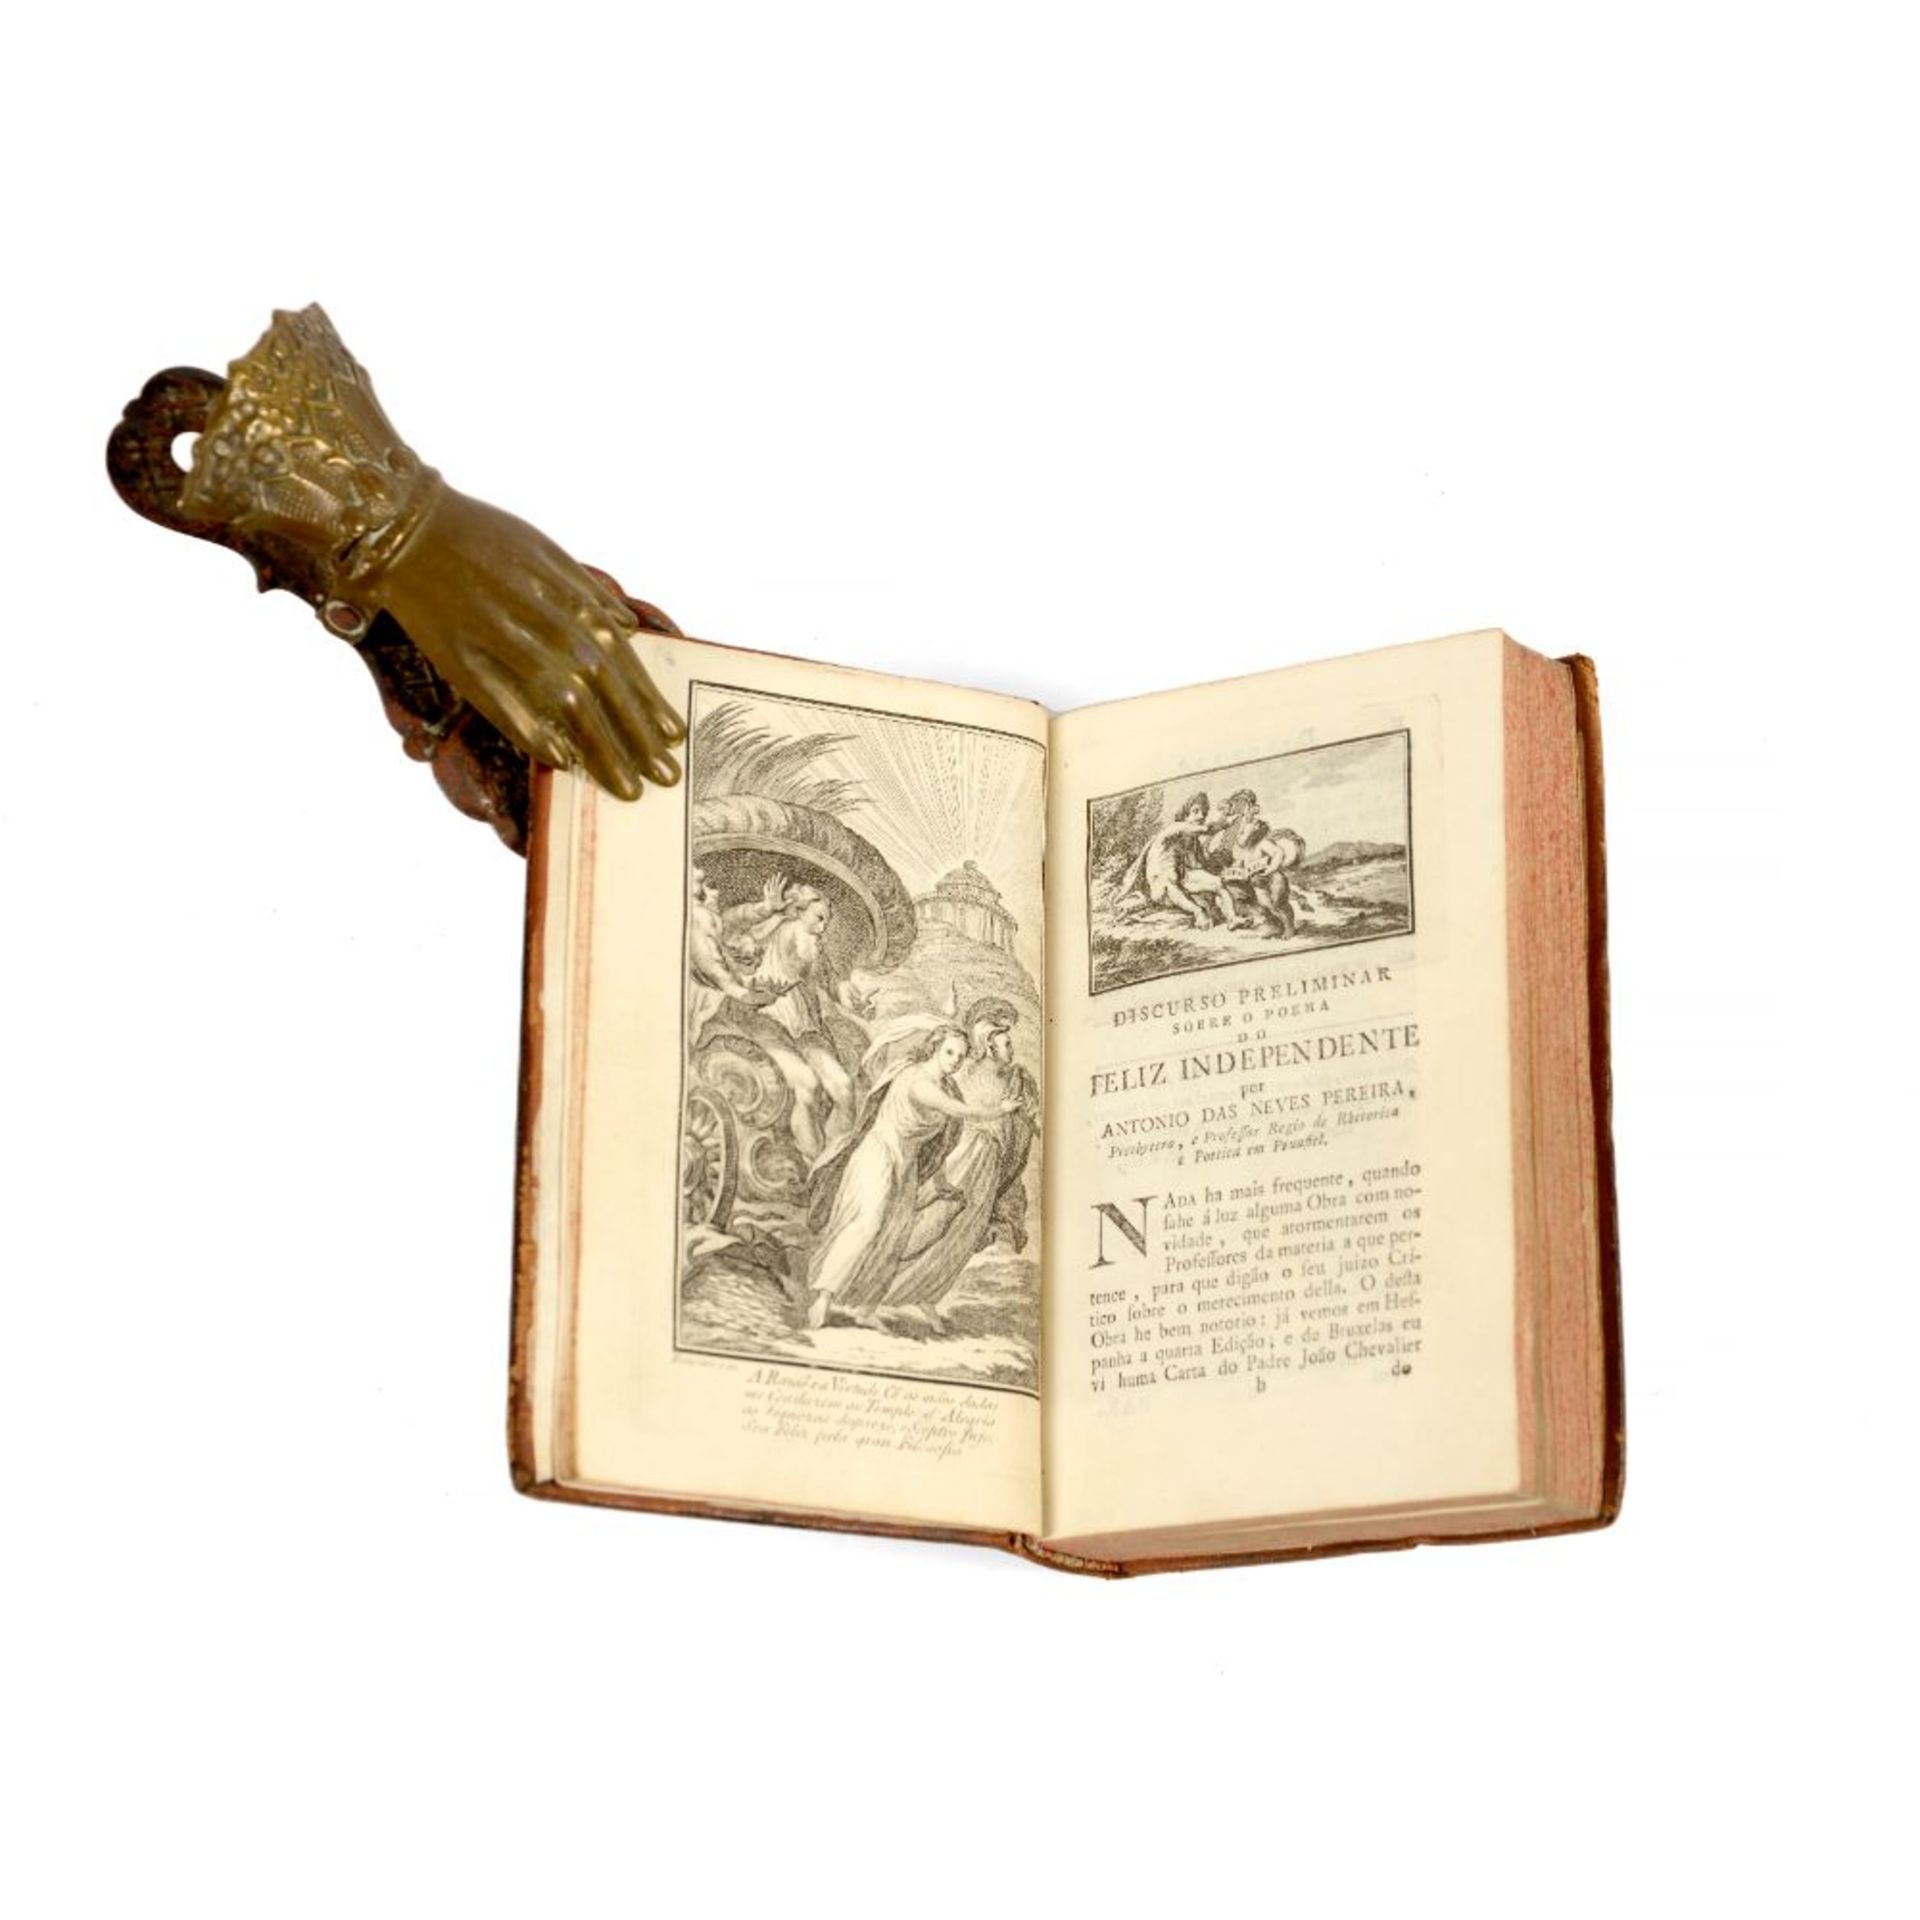 ALMEIDA, Teodoro de, 1722-1804, C.O. O feliz independente do mundo e da fortuna ou arte de viver con - Image 3 of 3